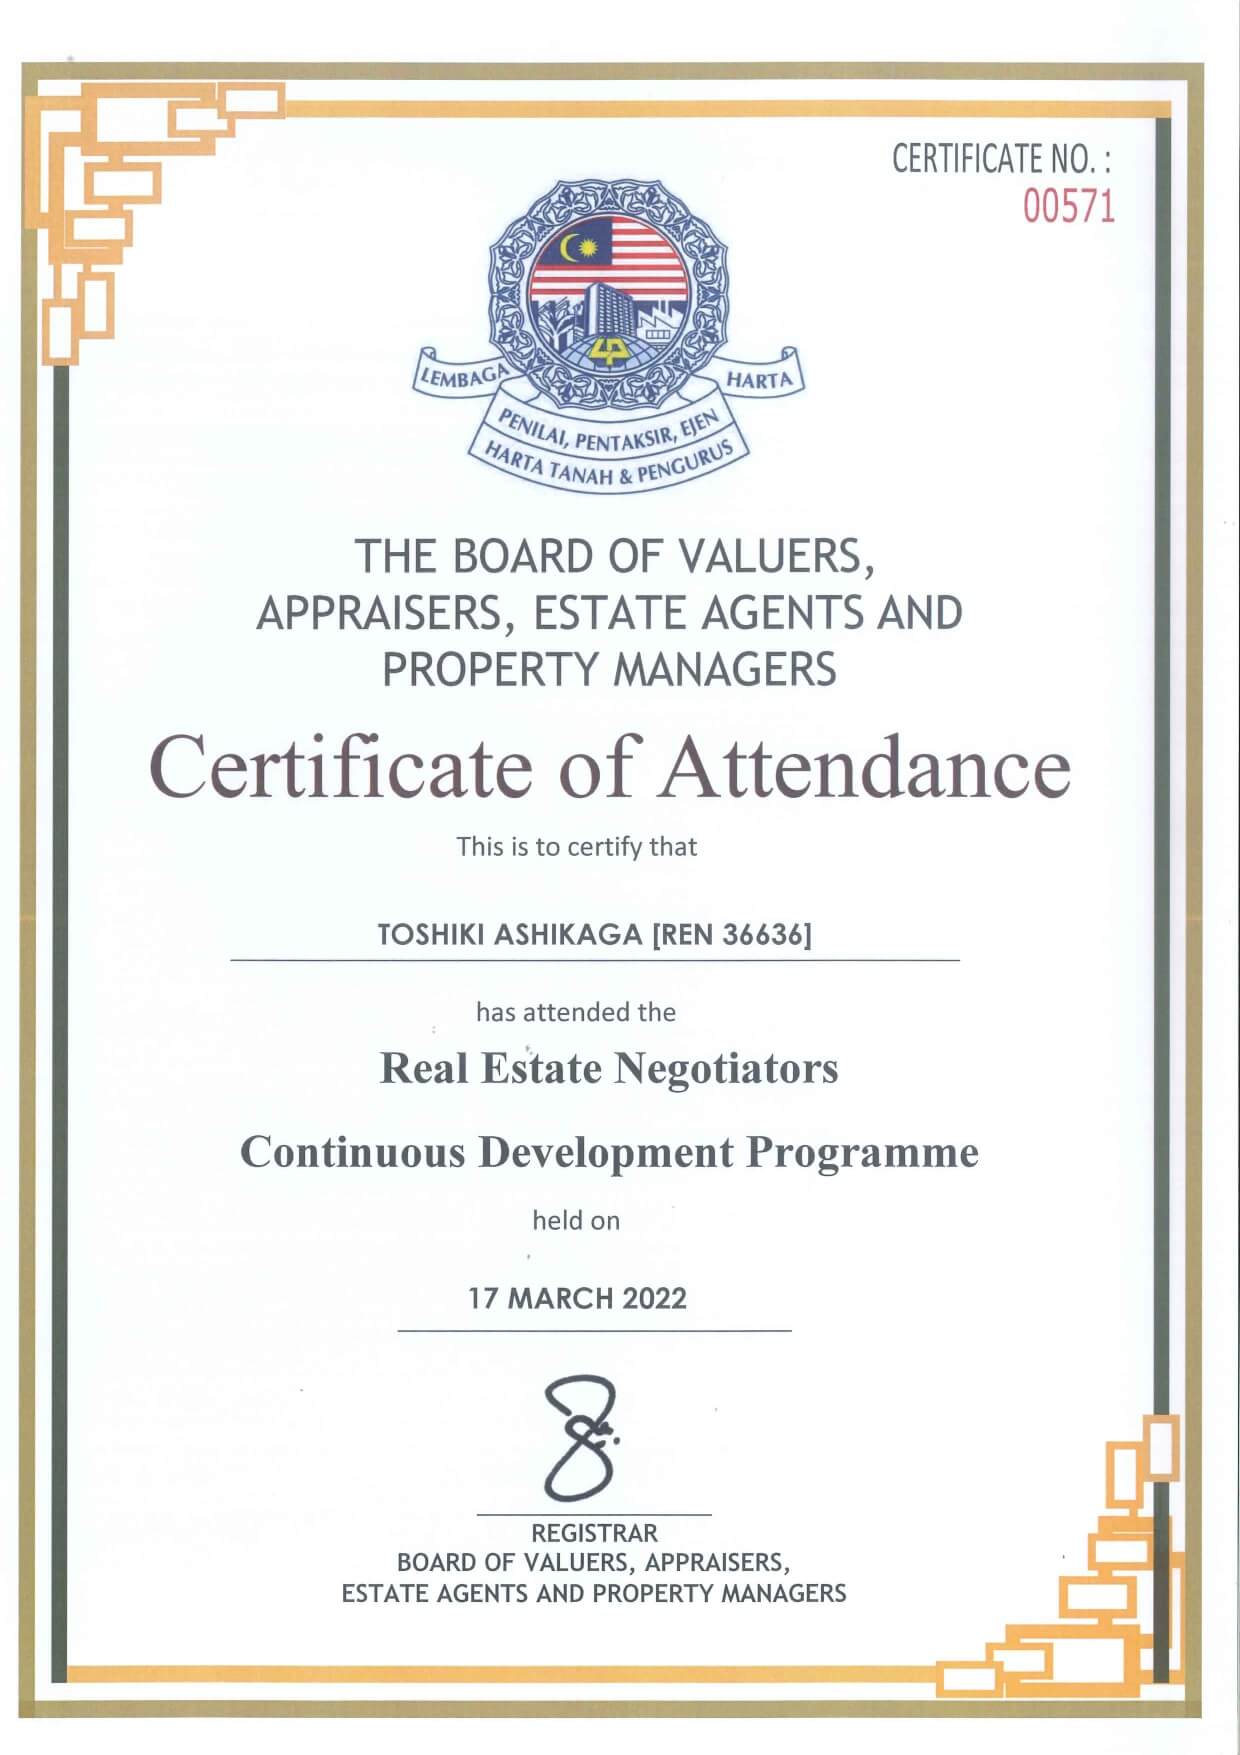 REN Certificate